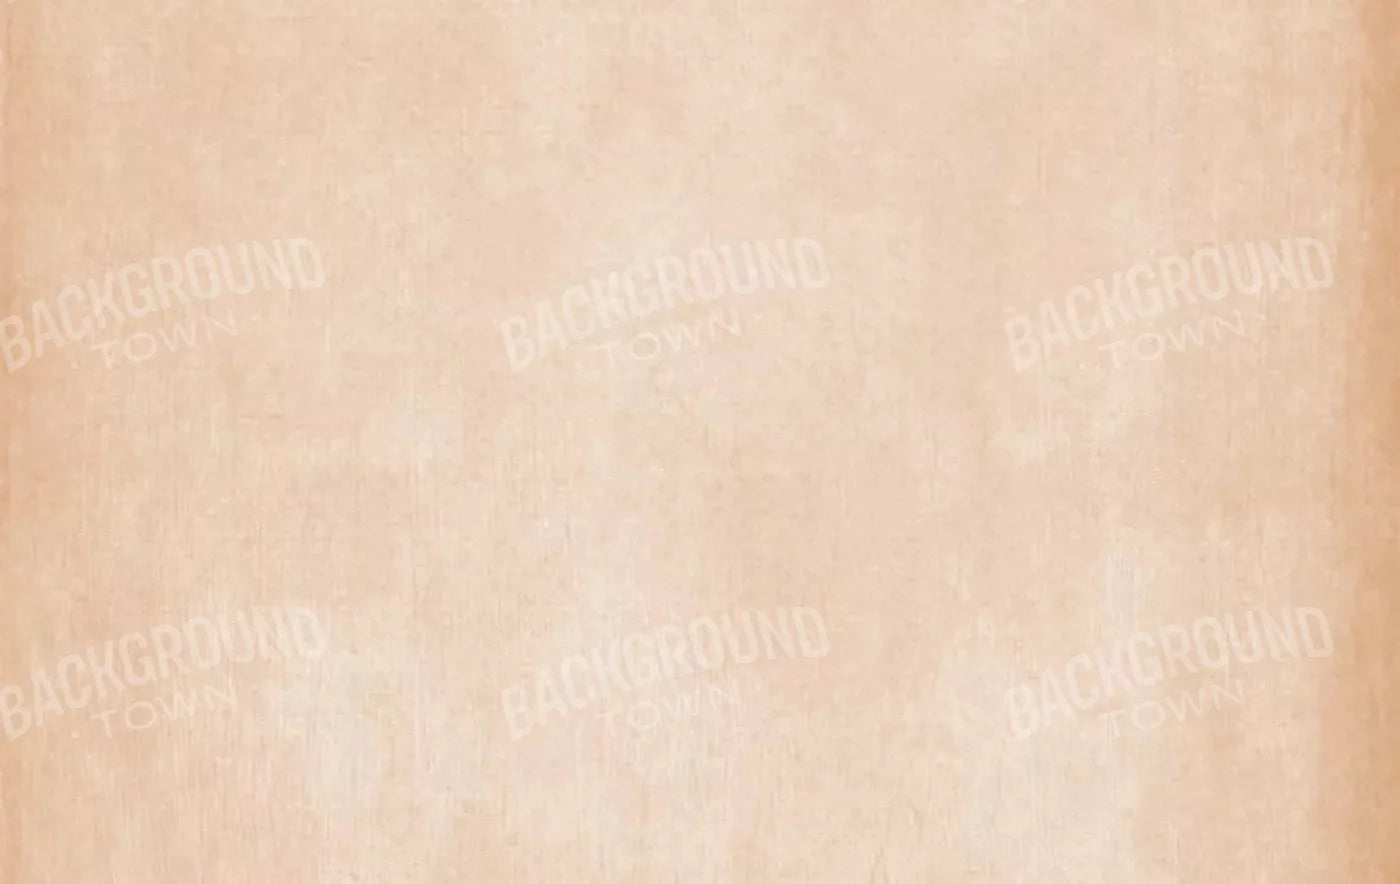 Daydream Peach 16X10 Ultracloth ( 192 X 120 Inch ) Backdrop